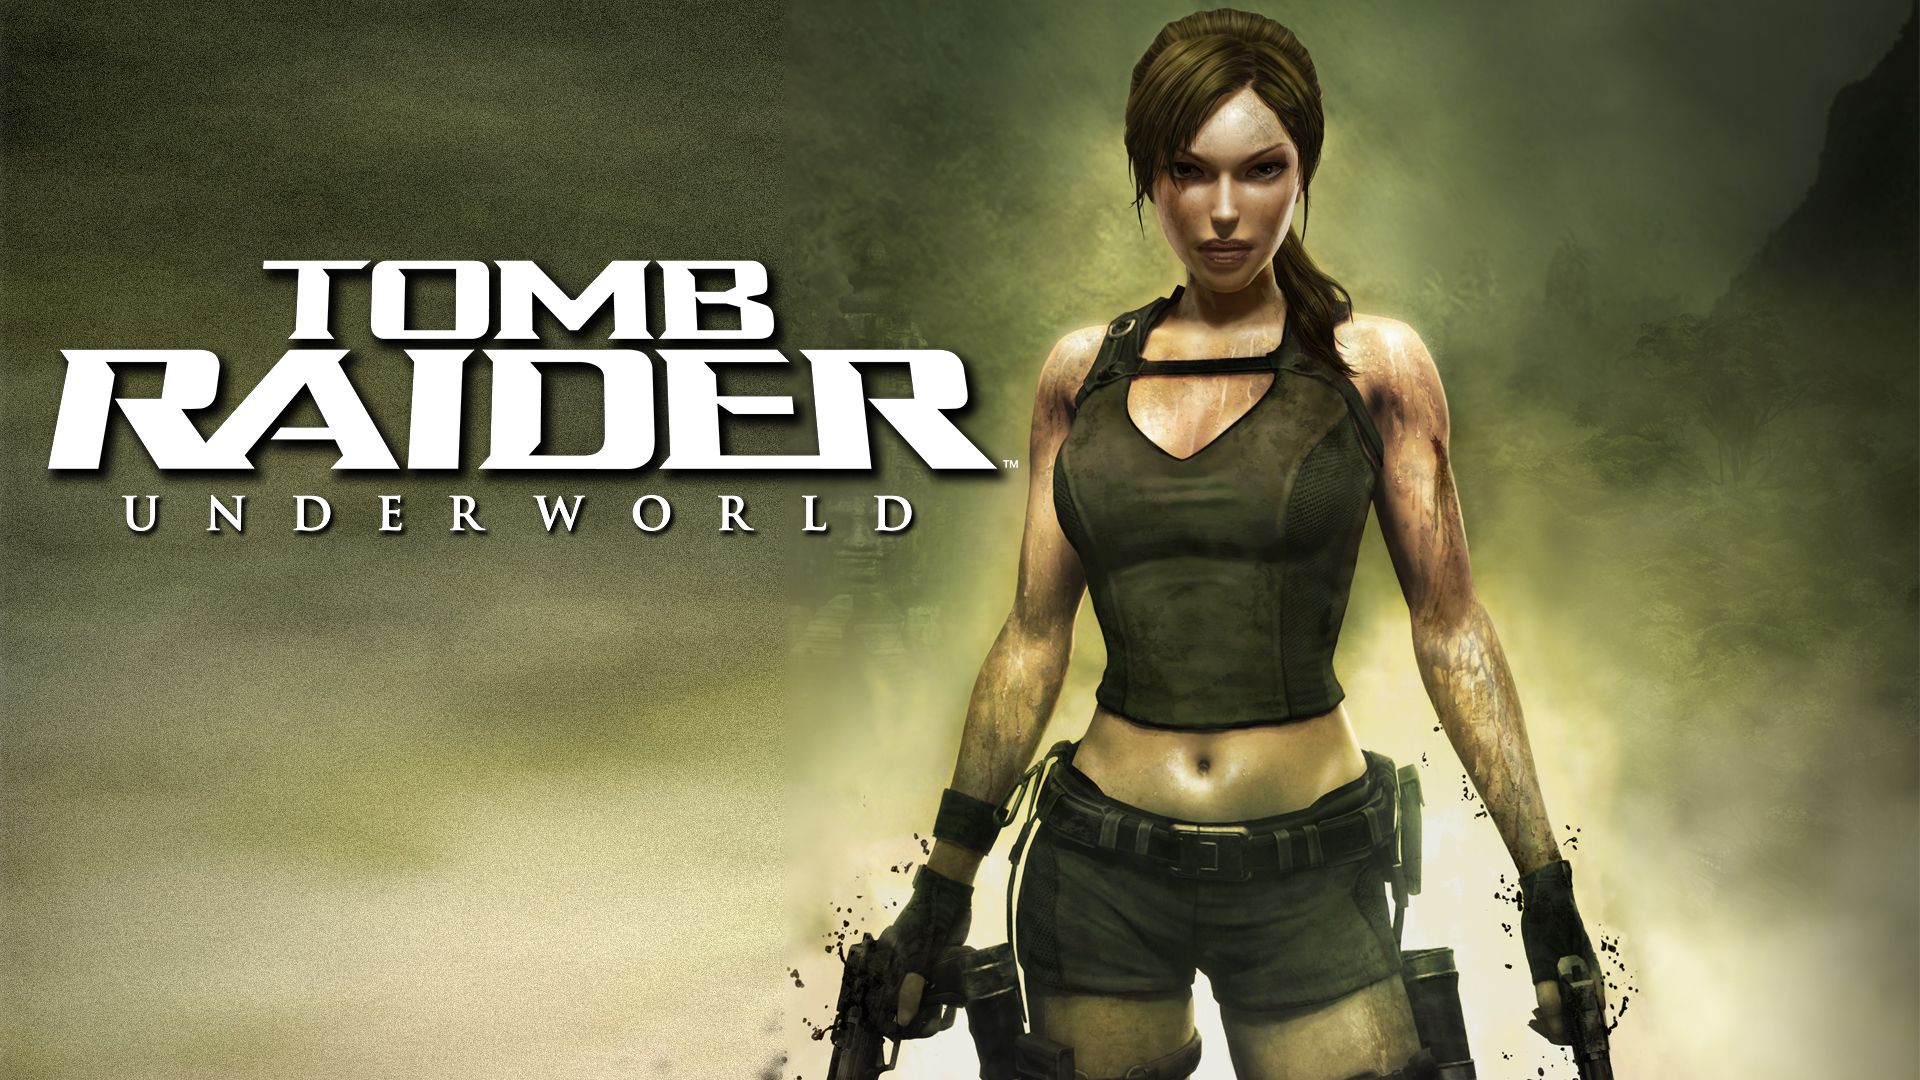 Прохождение игры Tomb Raider: Underworld # 9. HD - Full 1080p. (Русская версия игры)